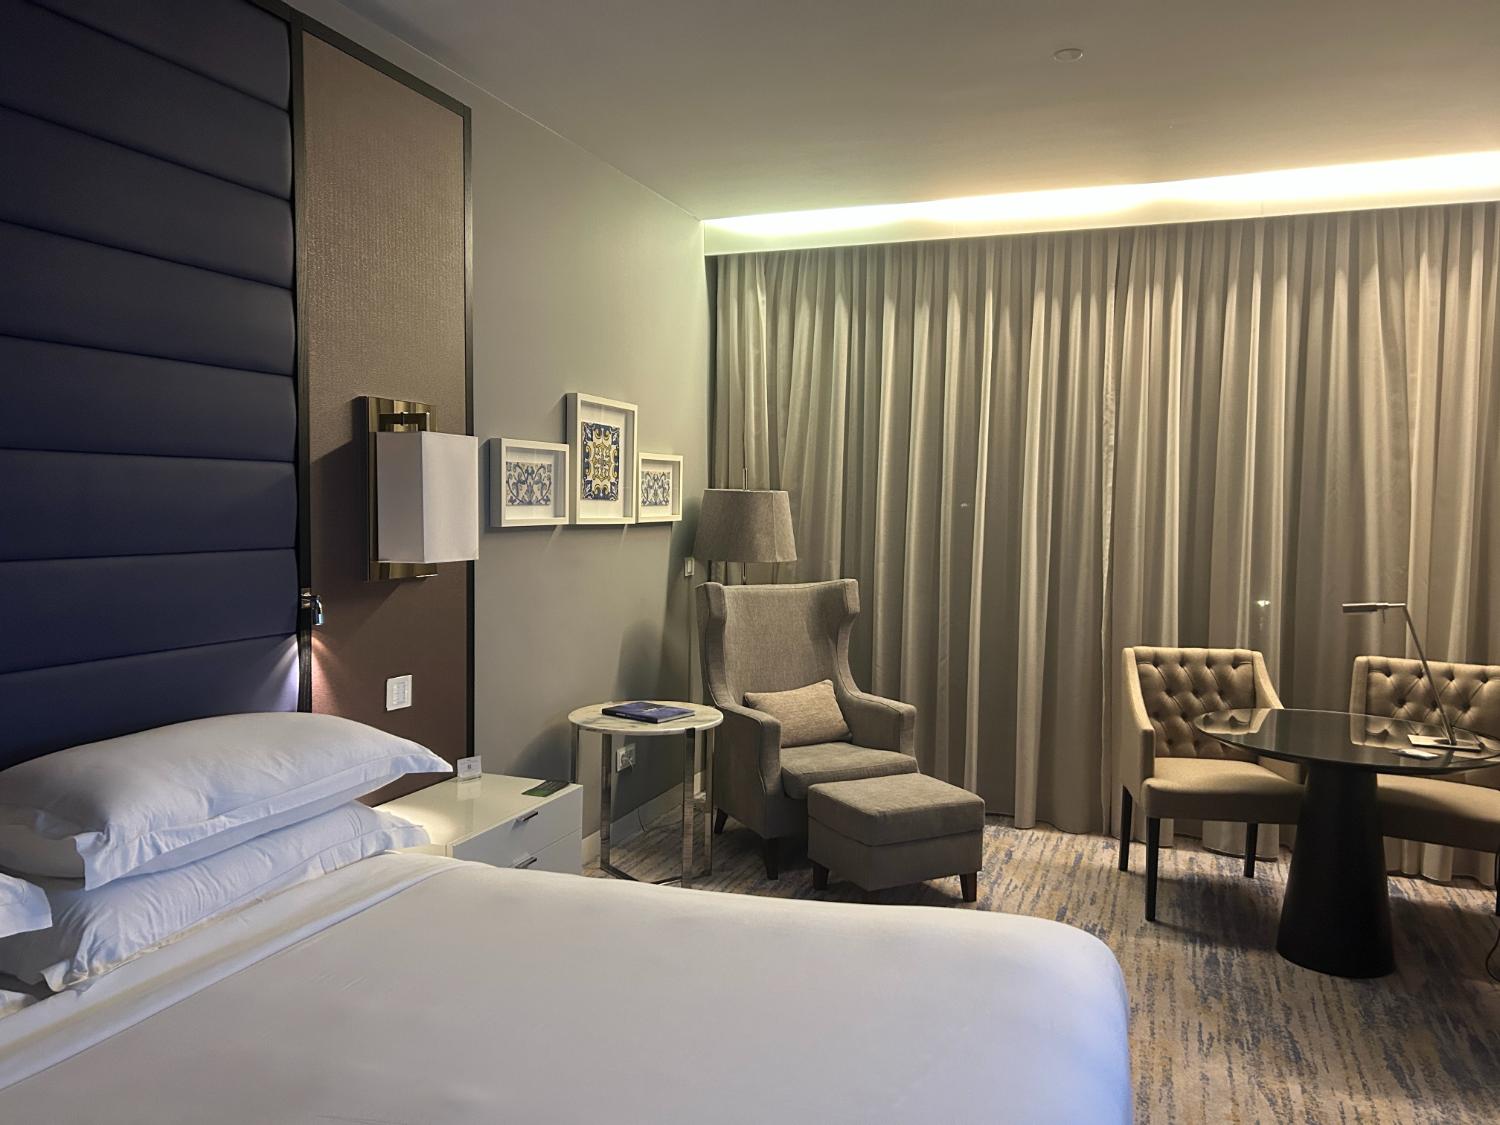 Cascais-Estoril hotel review - The room